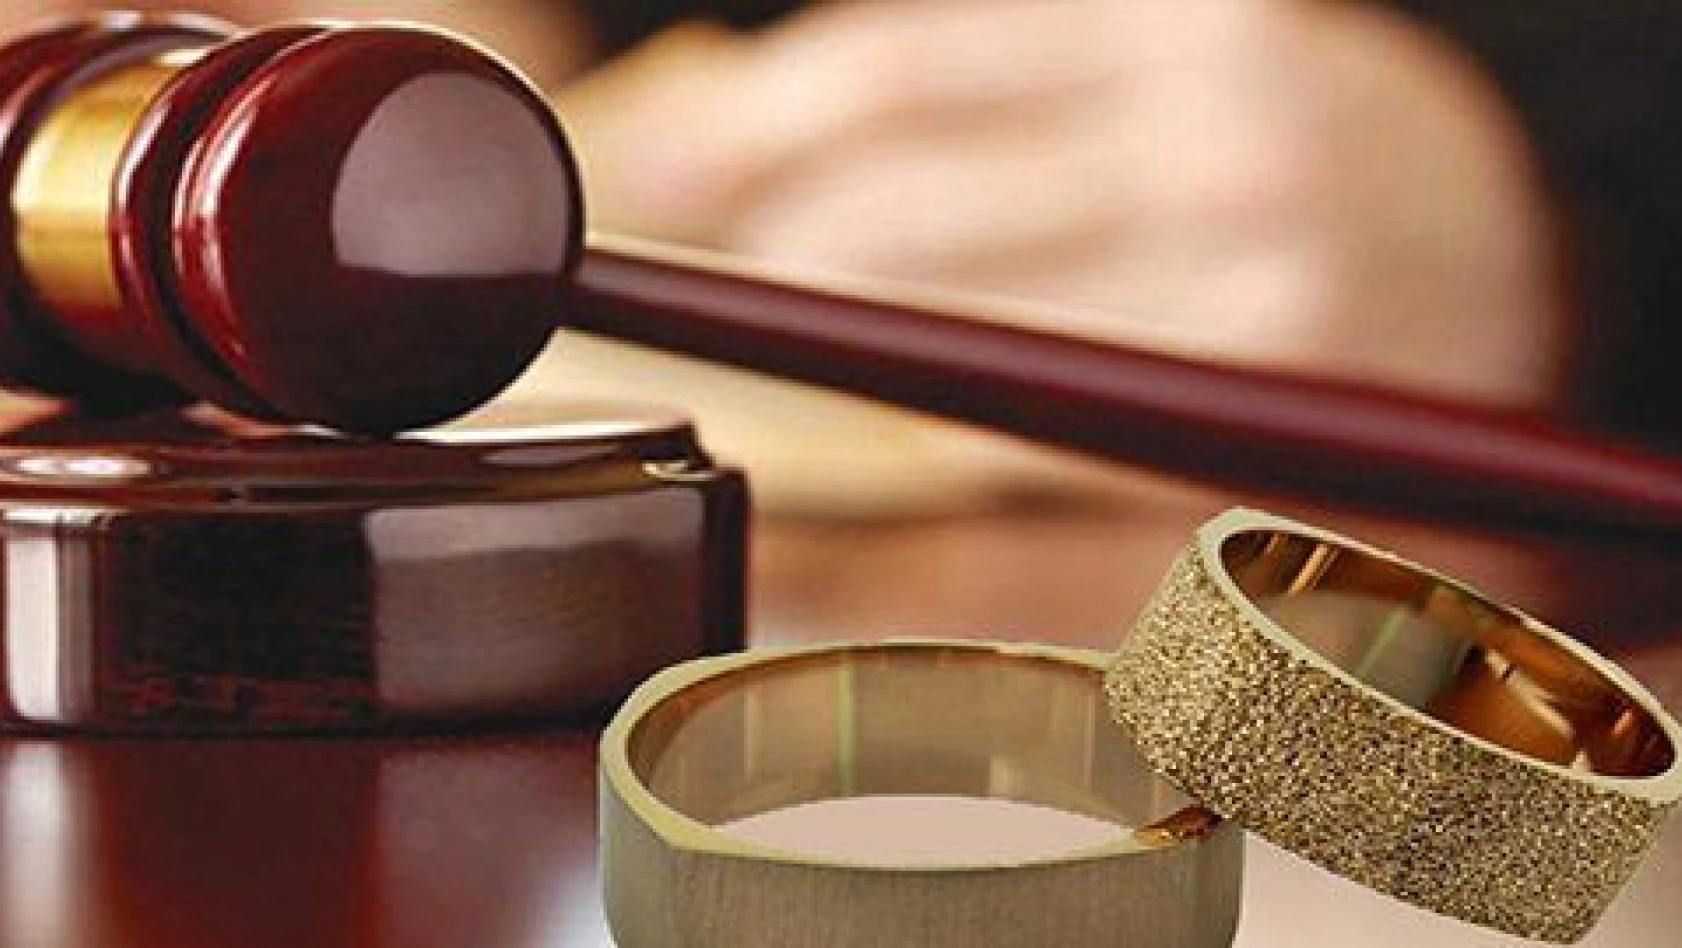 Kayseri'de evlenmelerde %3,6 azalma, boşanmalarda ise %6,9 artma oldu 